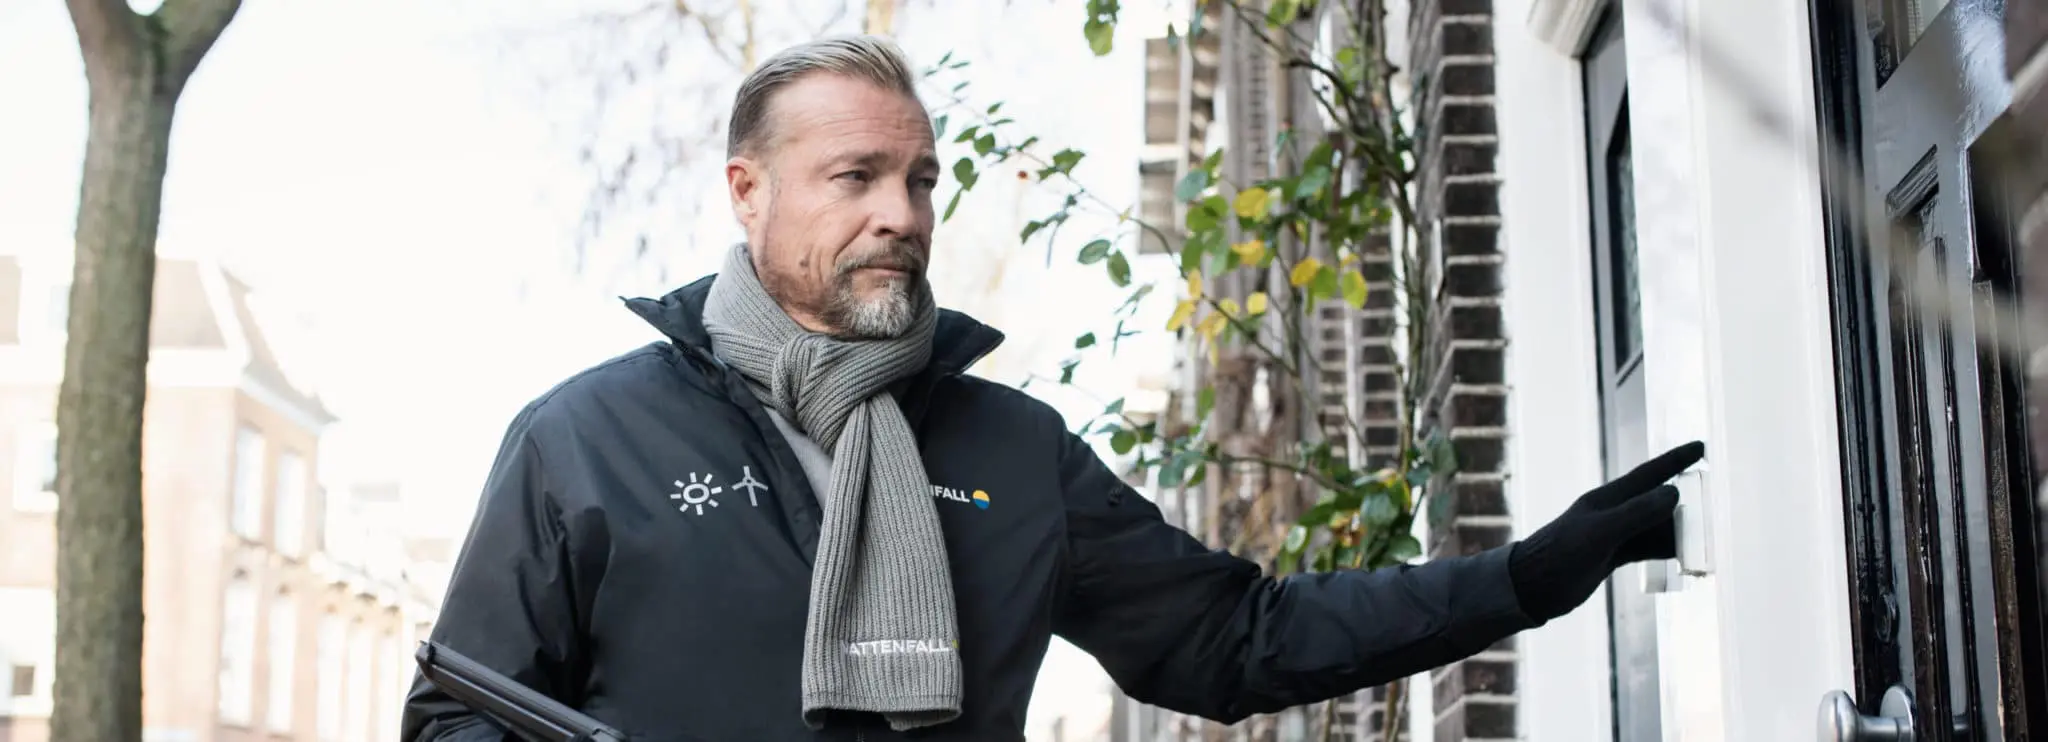 Bedrijfskleding casual Vattenfall verkoper met softshell en shawl